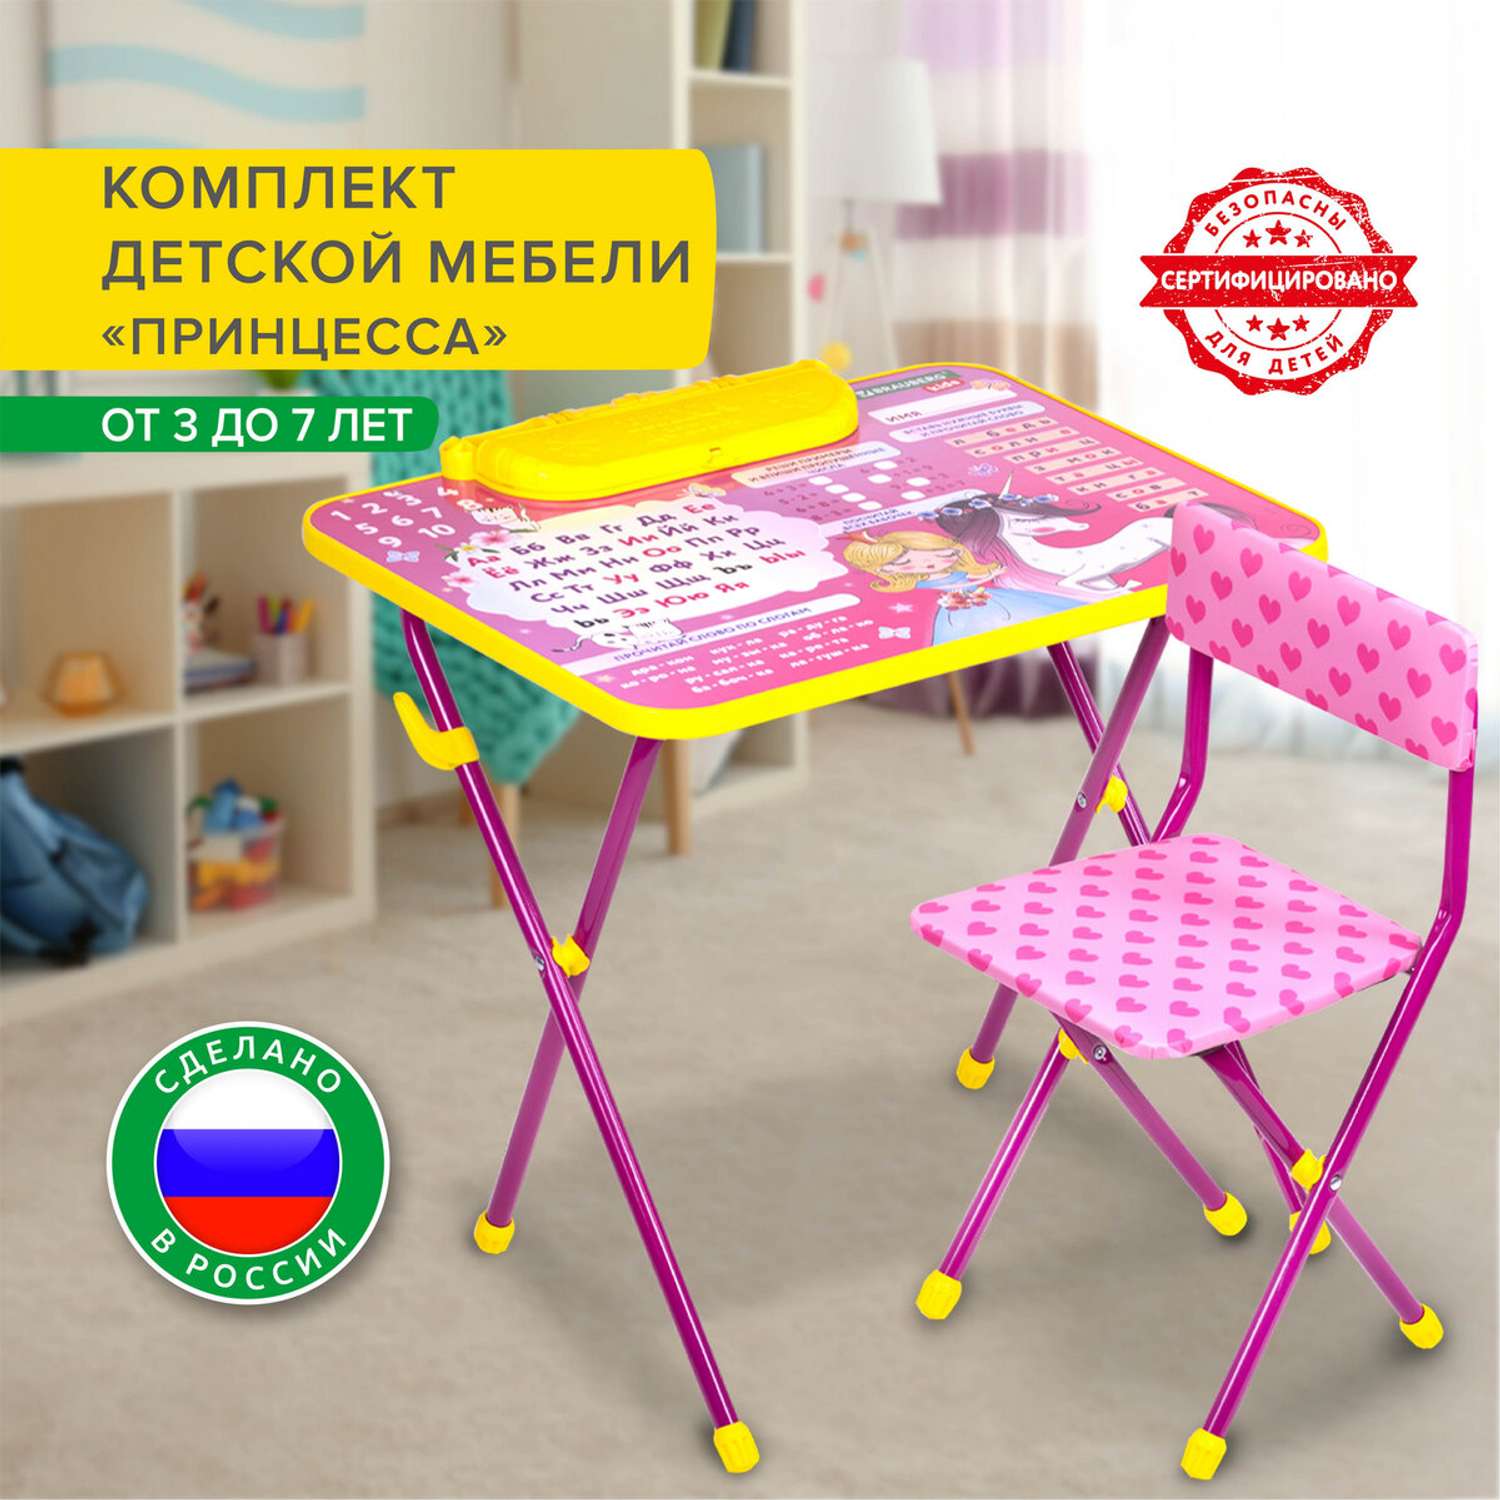 Детские столы, стулья - фабричные (готовые)